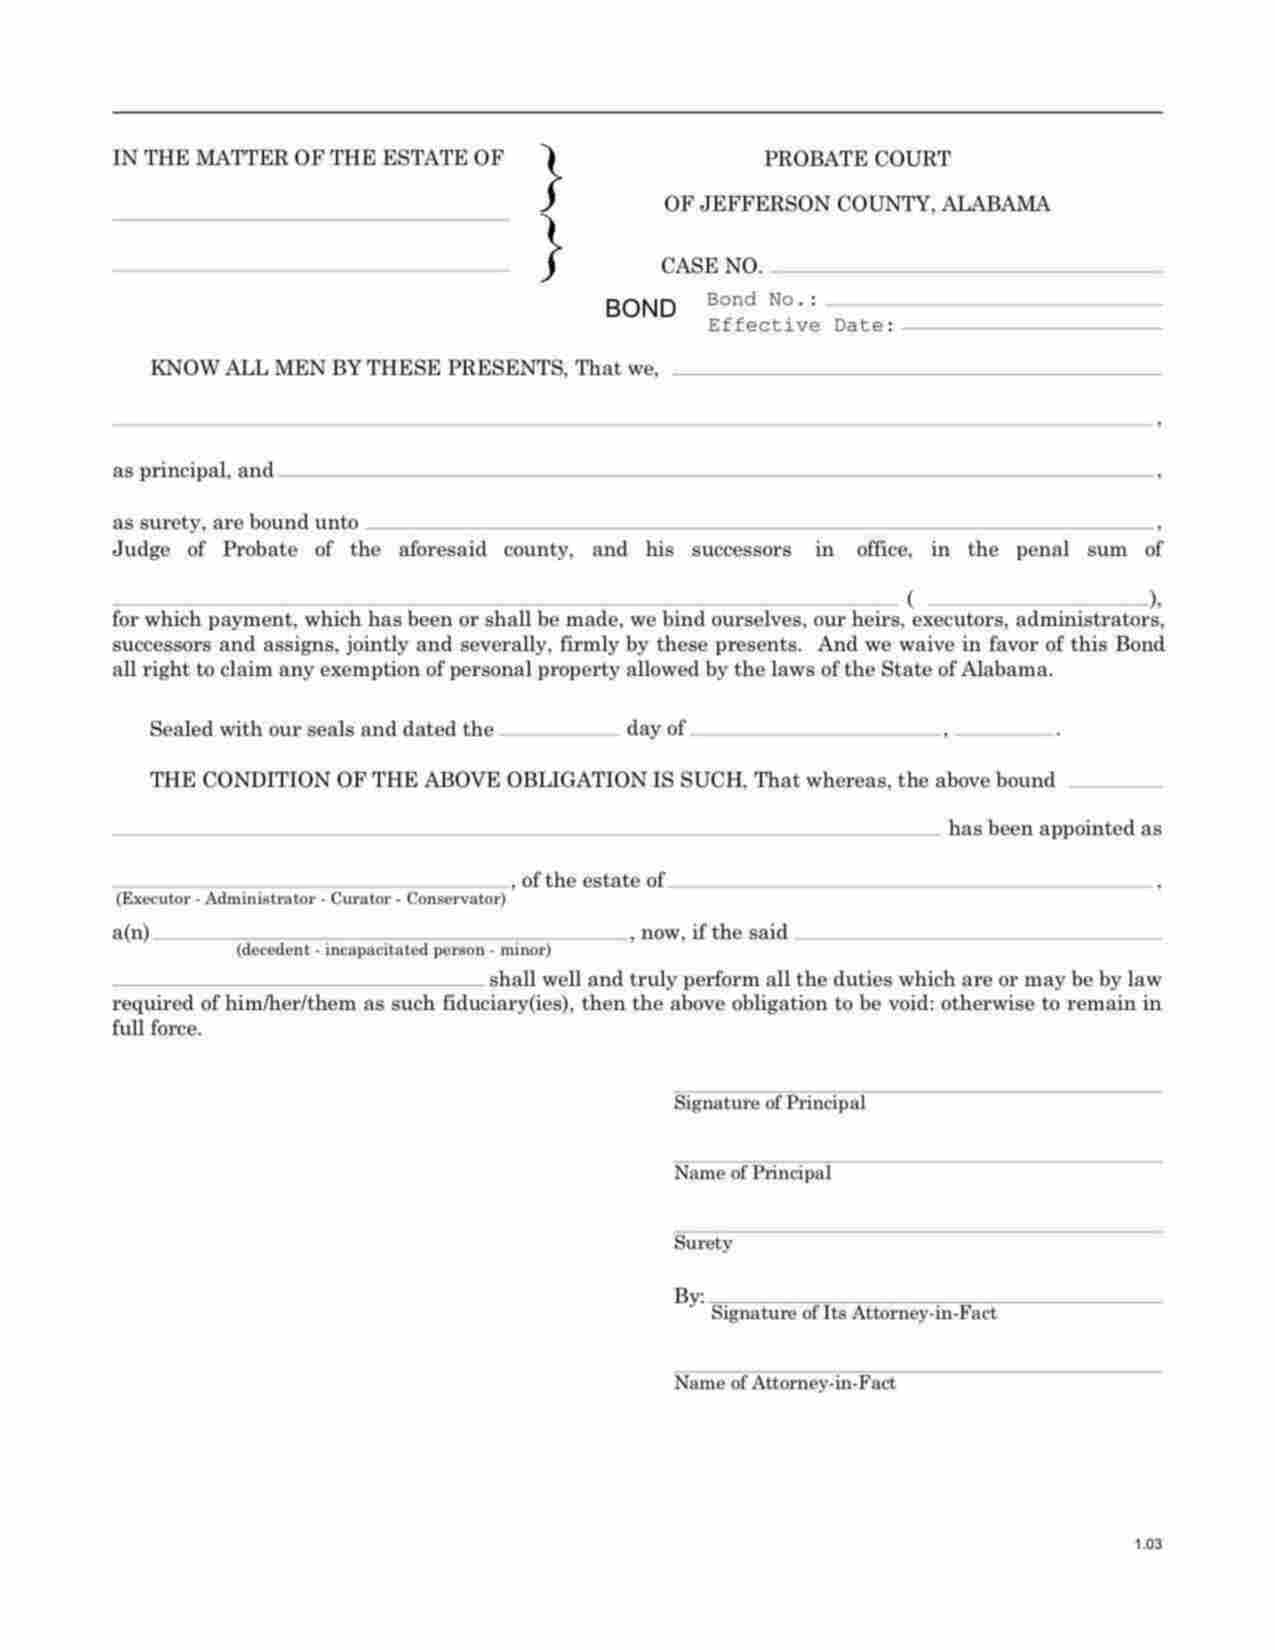 Alabama Administrator/Executor Bond Form